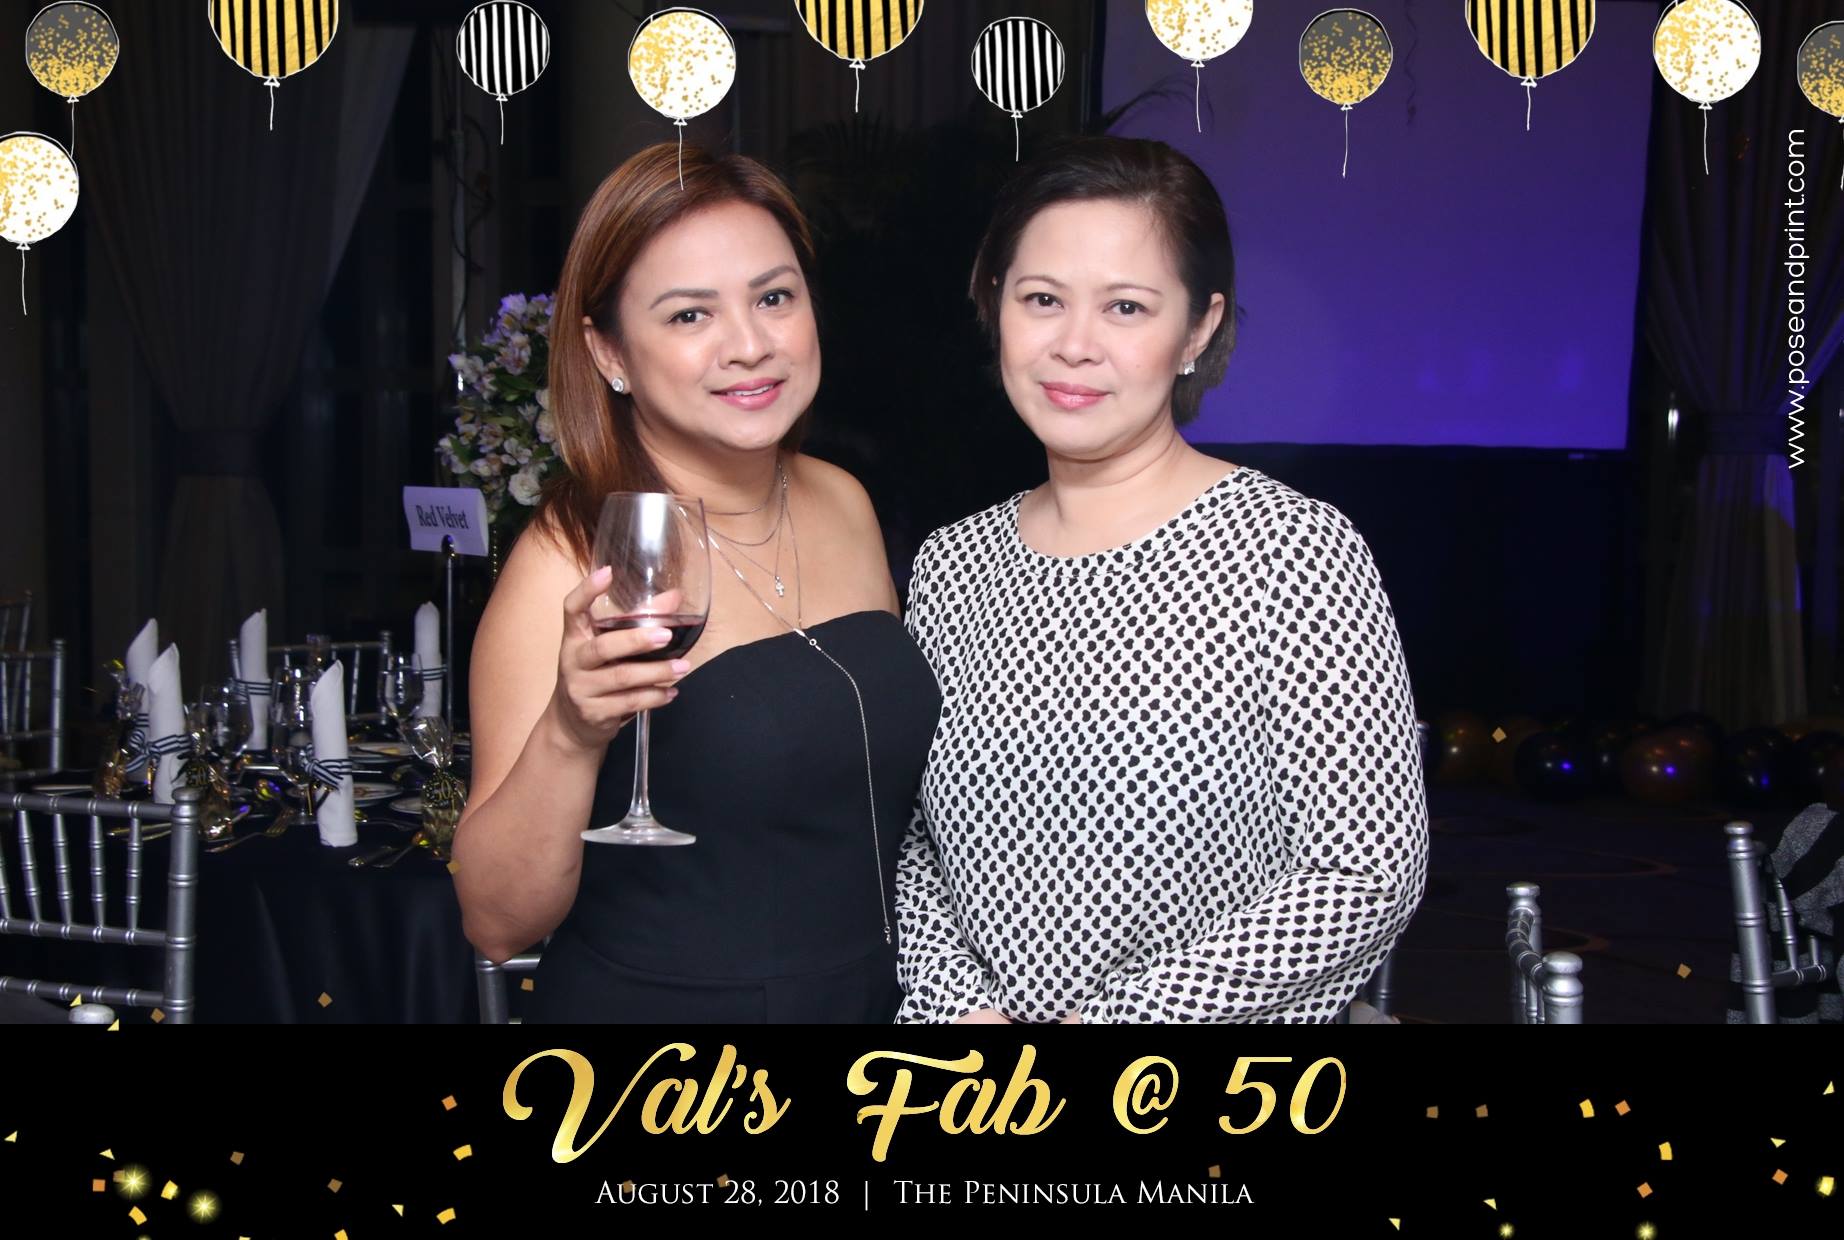 Val’s Fab @ 50 Birthday – Photoman